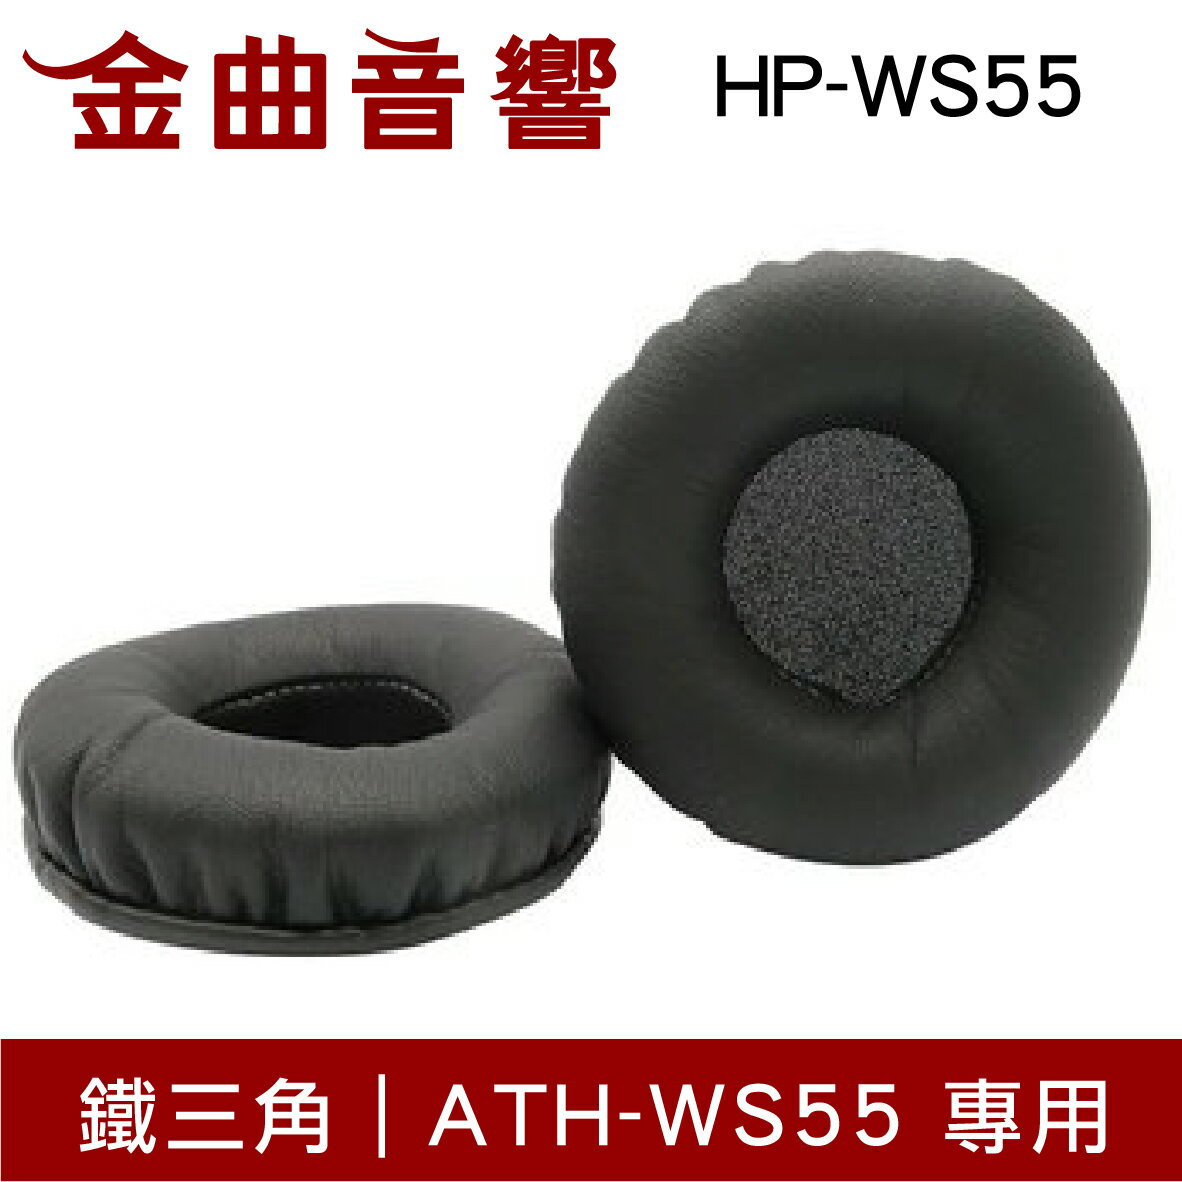 鐵三角 HP-WS55 替換耳罩 ATH-WS55 專用 | 金曲音響